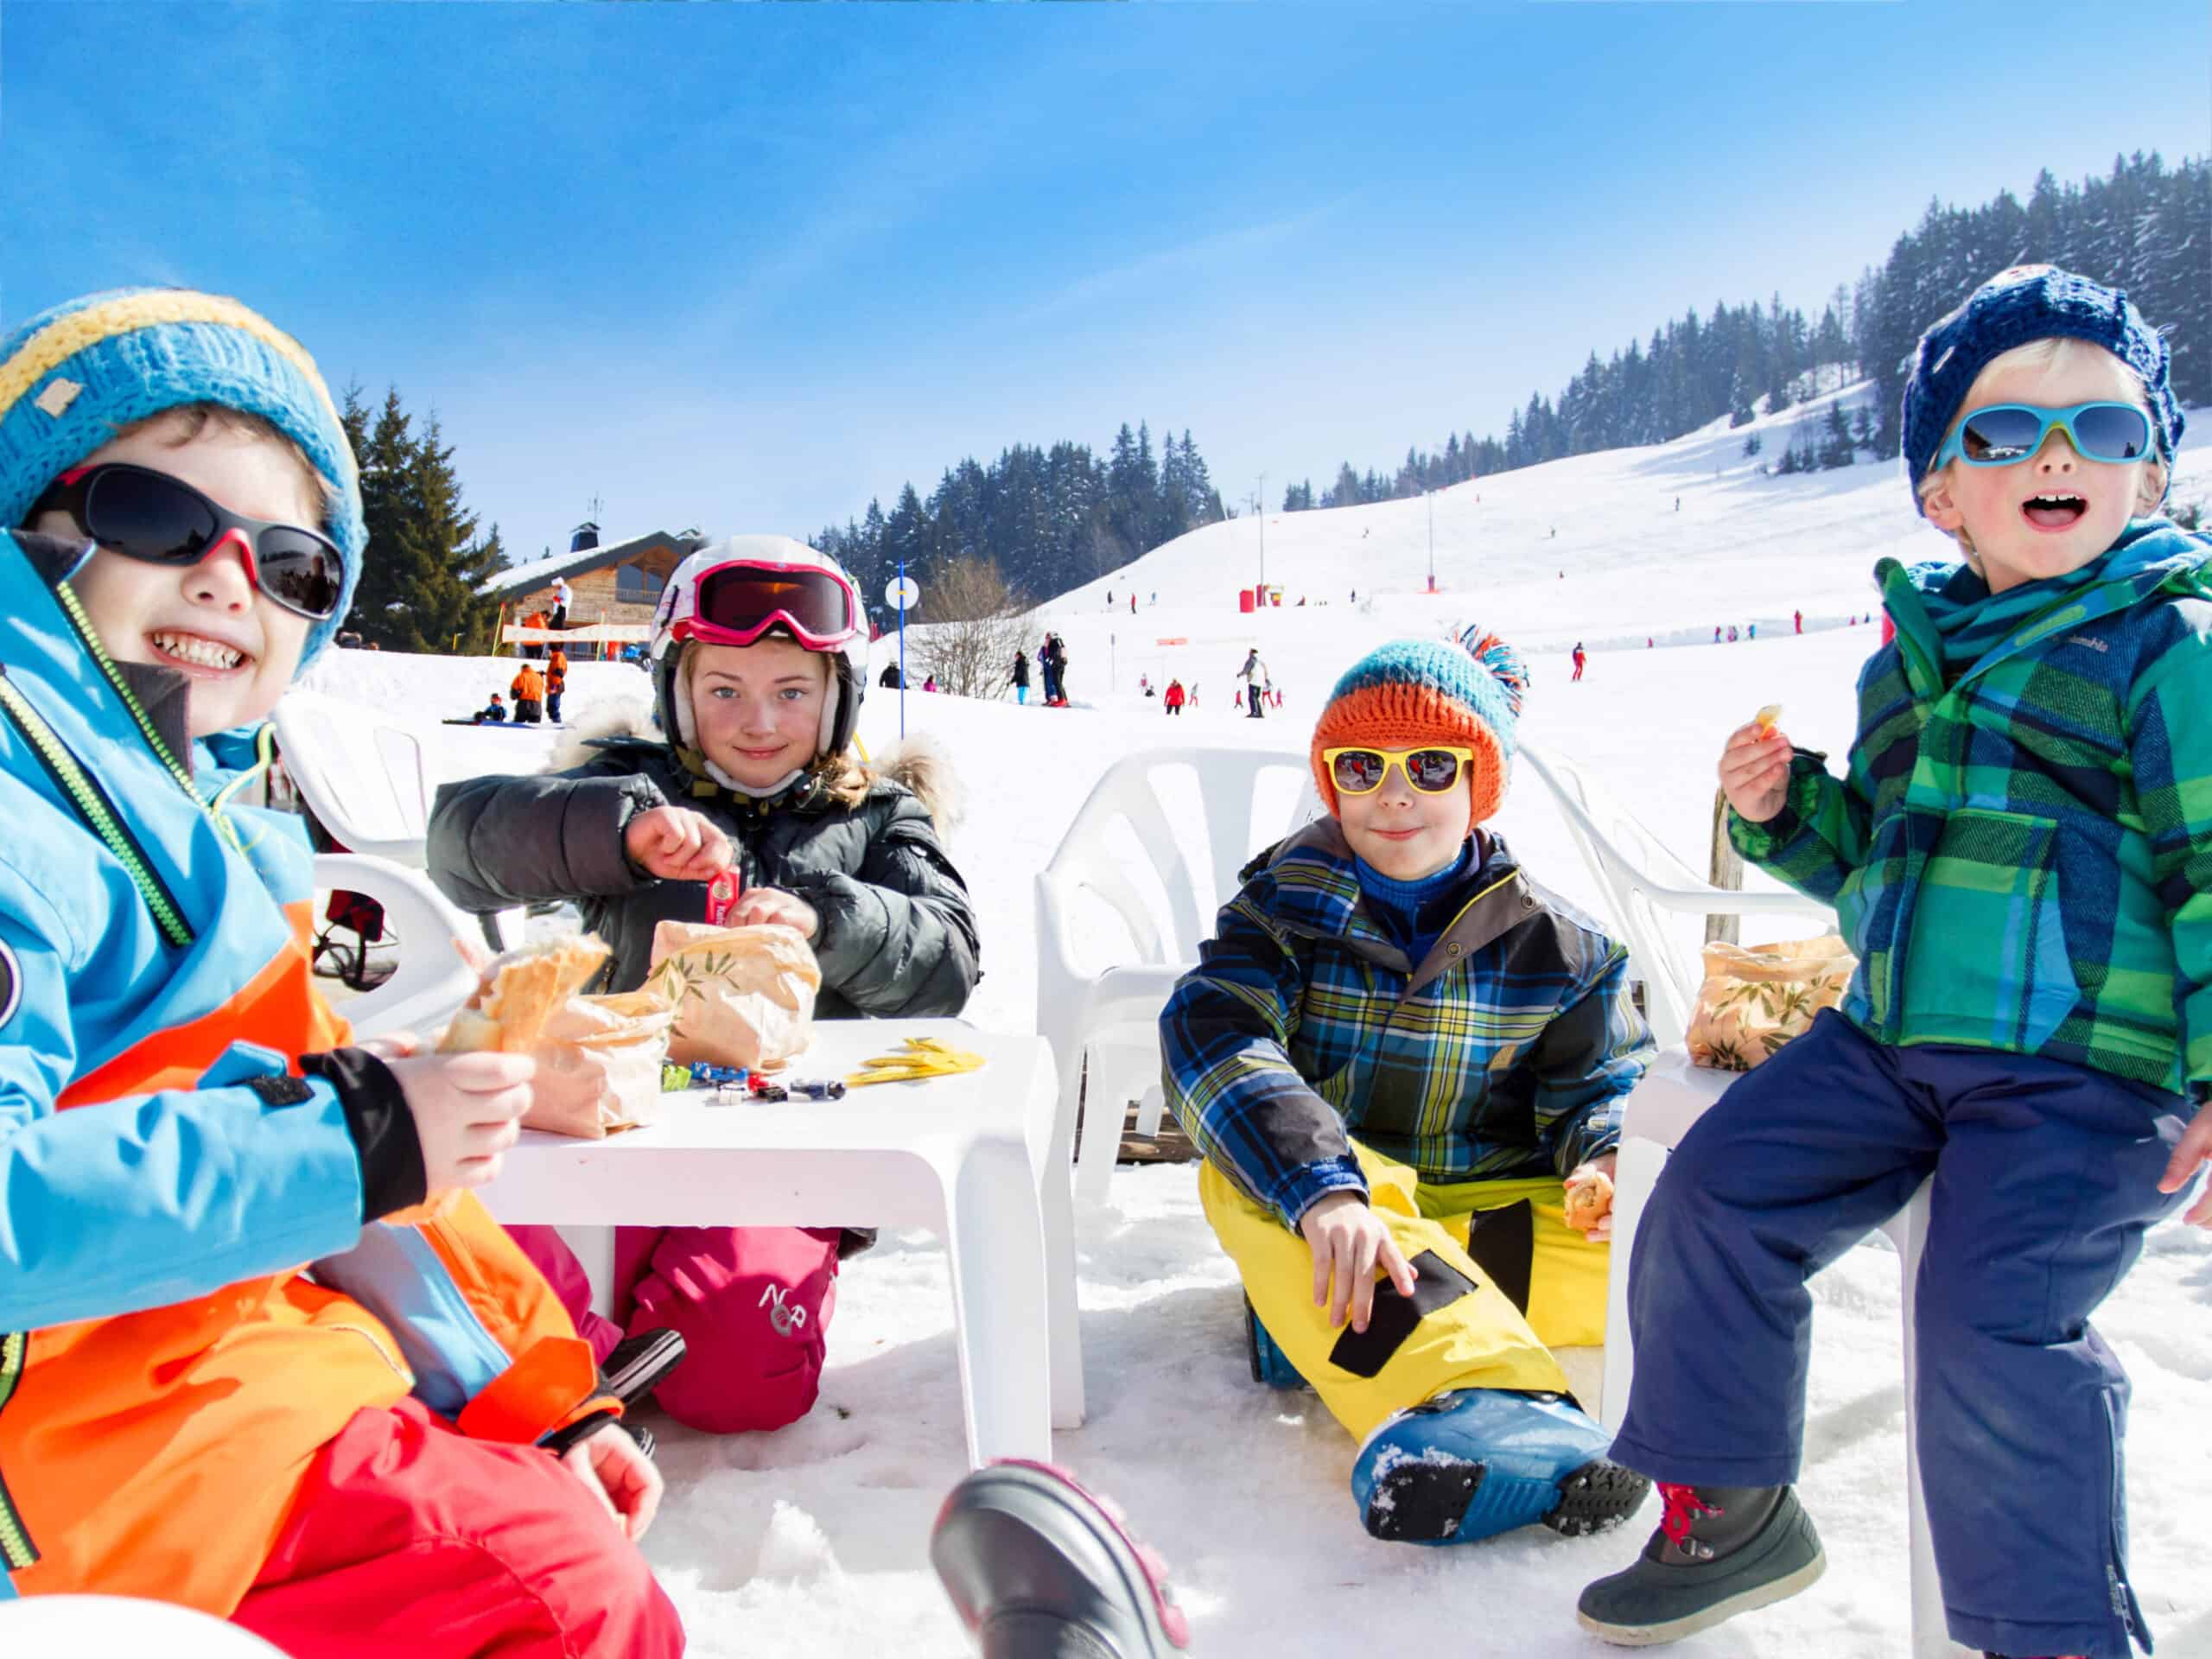 Des enfants en train de goûter dans une garderie au ski.